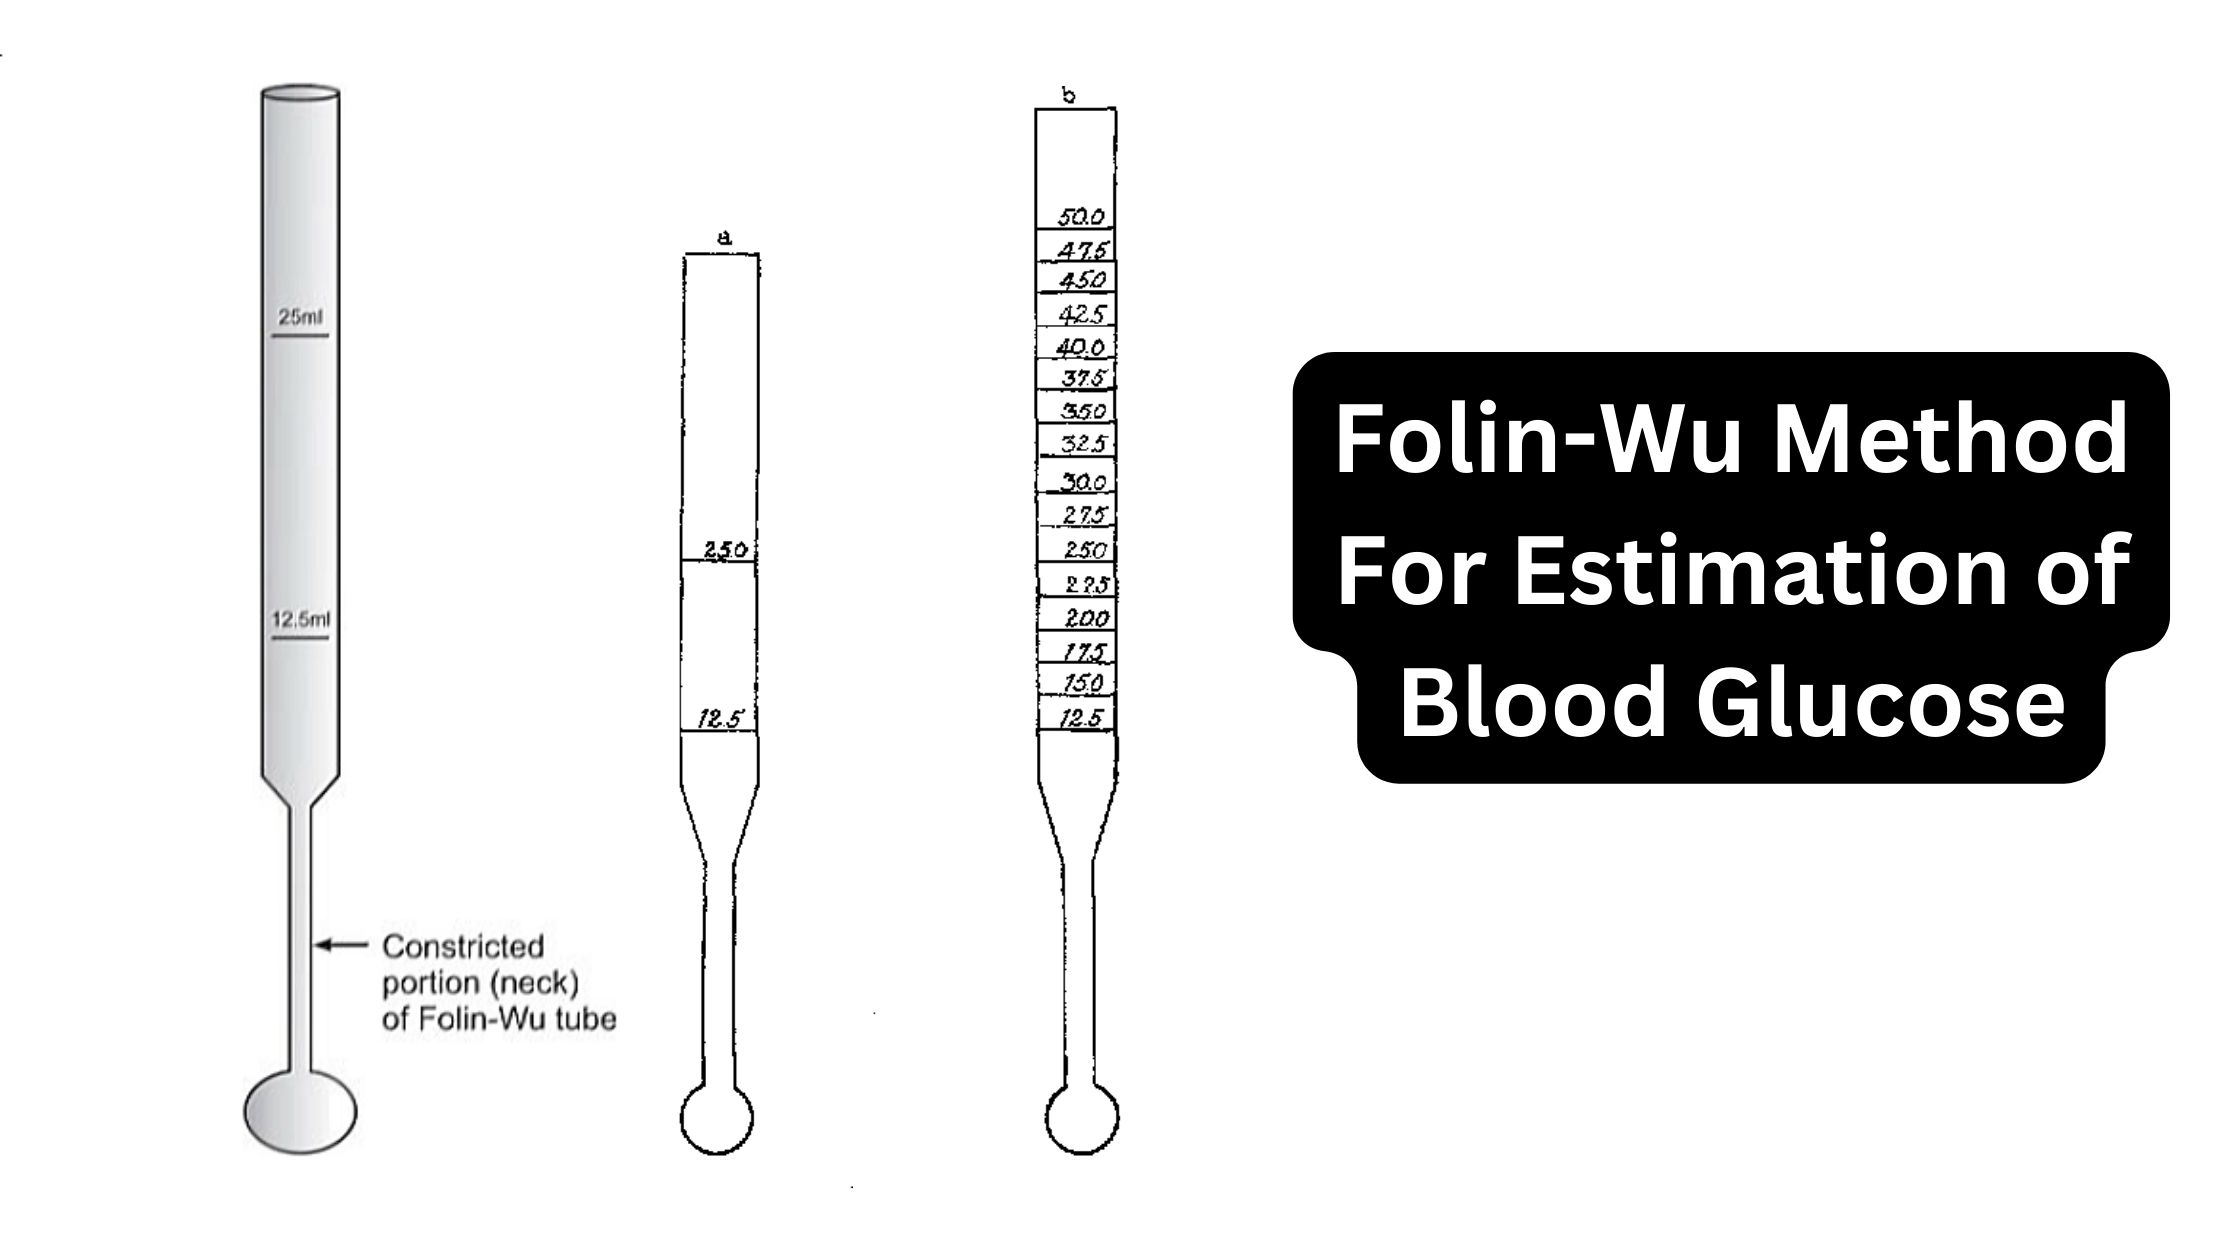 Folin-Wu Method For Estimation of Blood Glucose